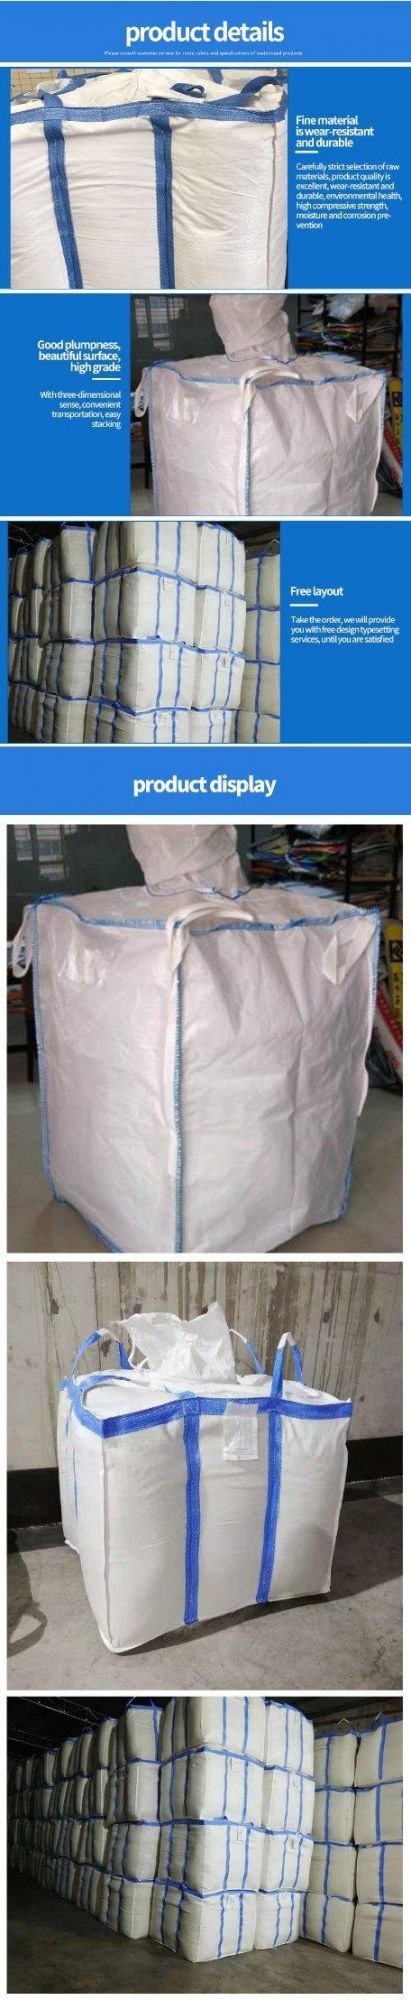 Jumbo Bags FIBC 1 Ton Big Bulk Bags Container Bags